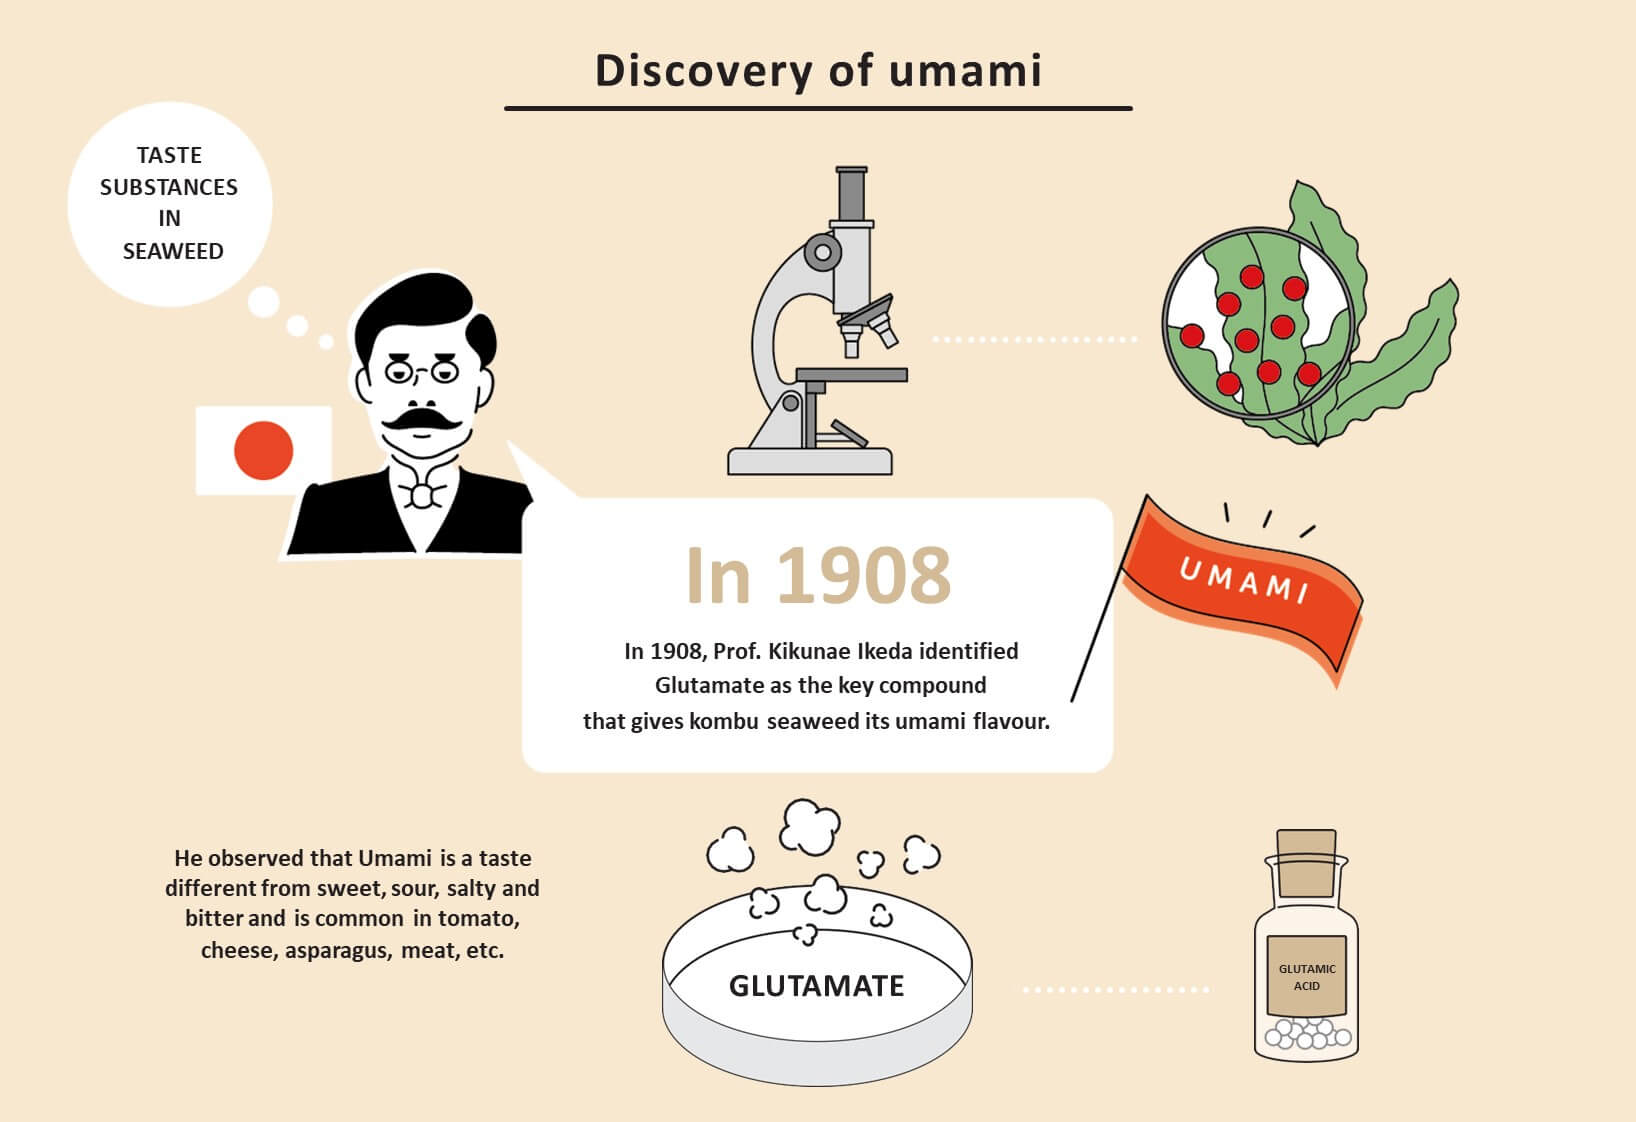 Em 1908, o Prof. Kikunae Ikeda identificou o glutamato como o composto chave que dá às algas kombu seu sabor umami.